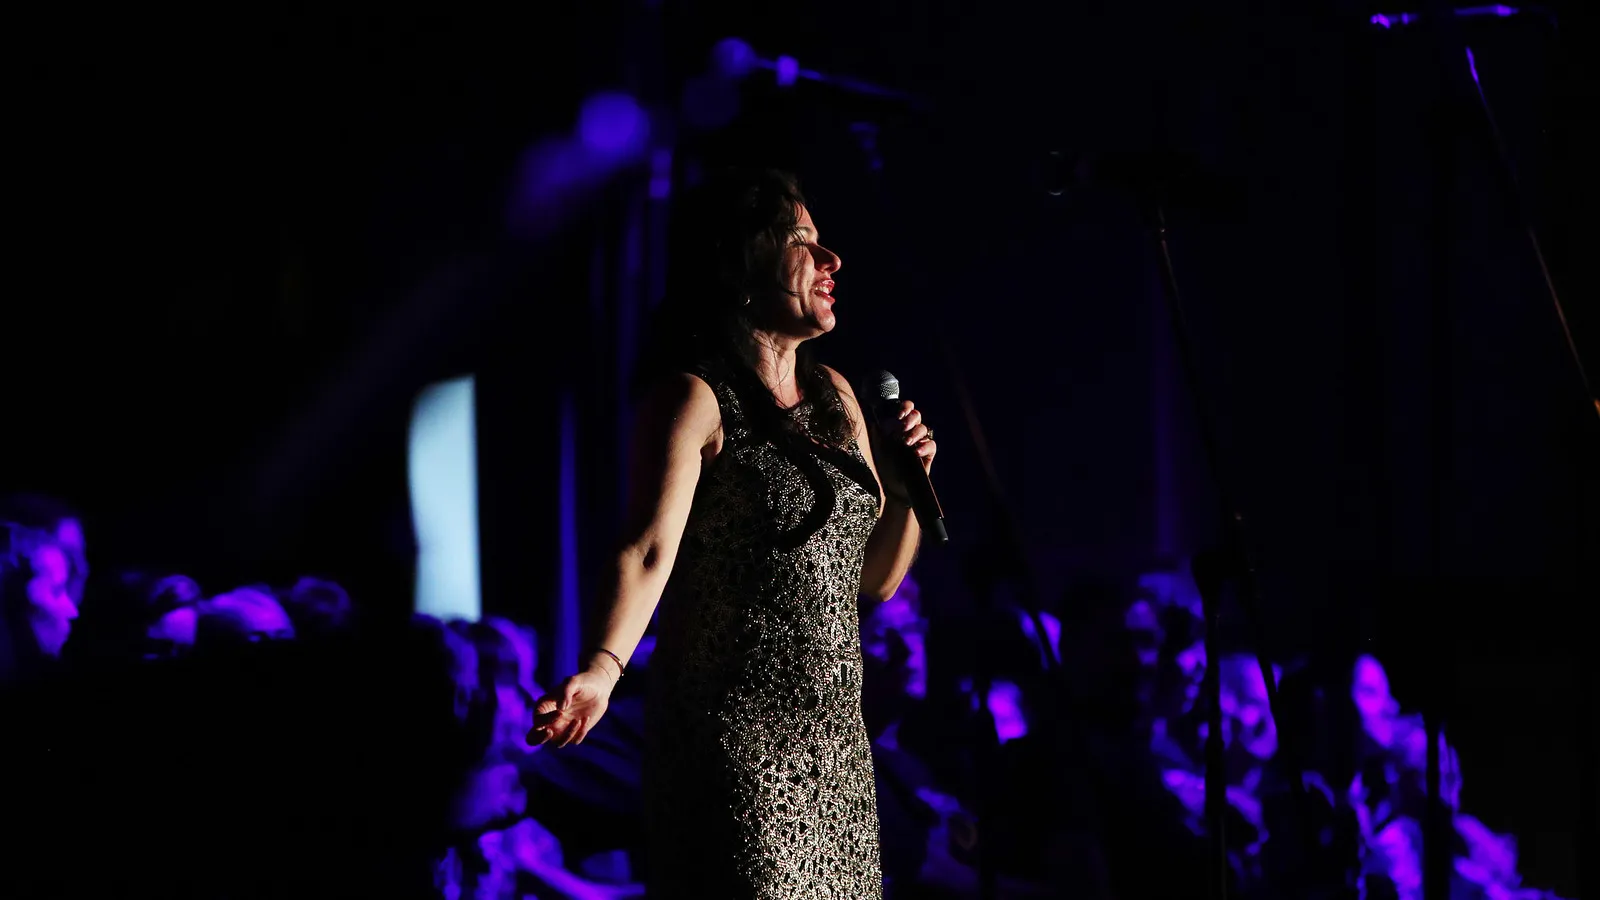 Tania de Jong performing at an event